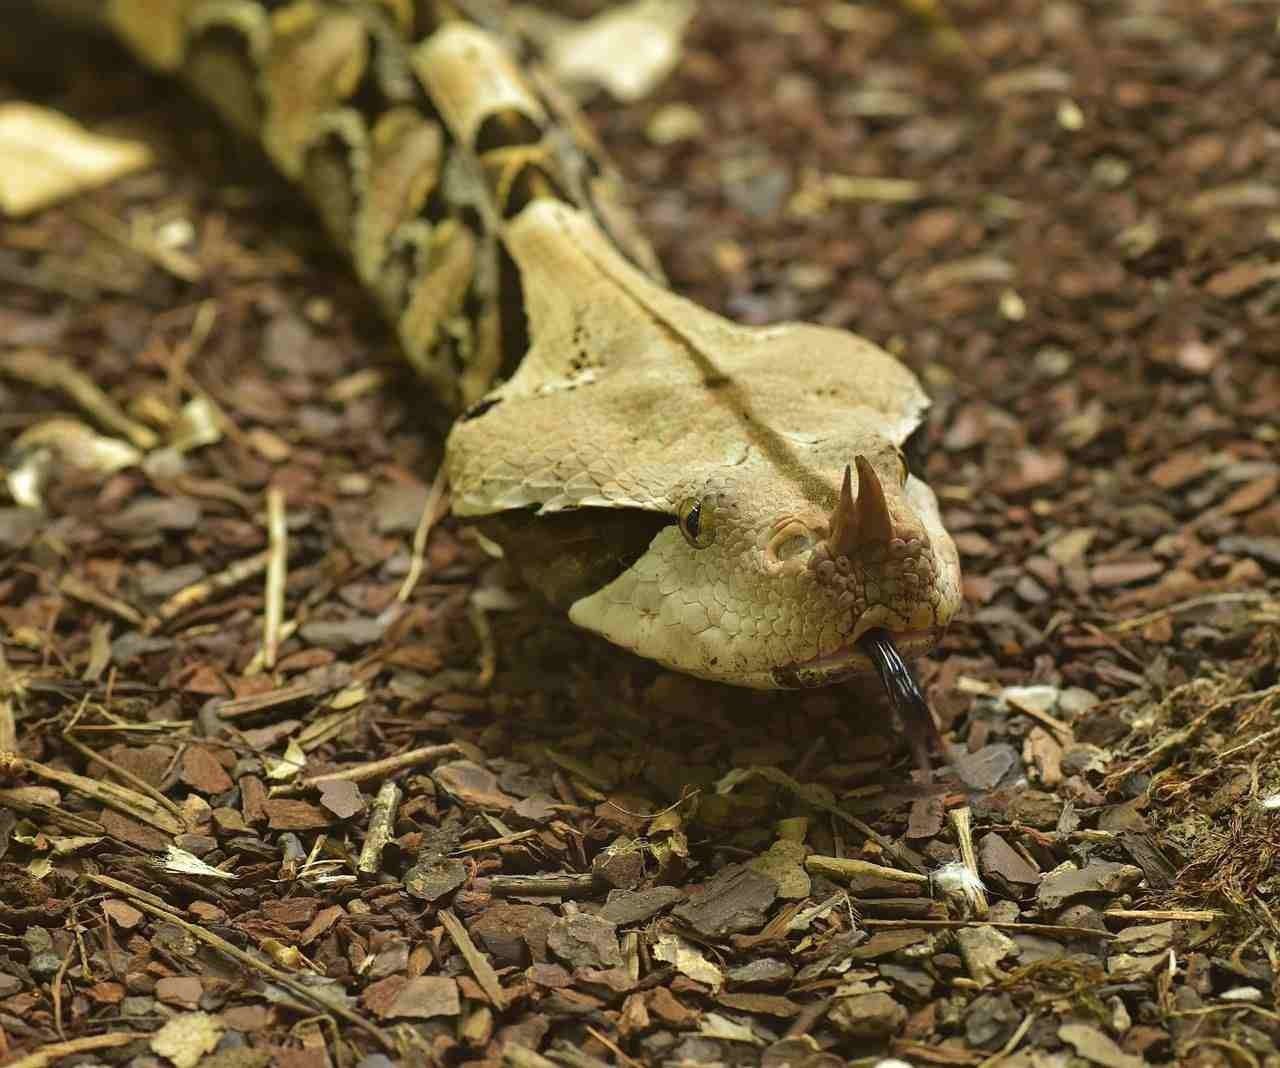 A Gaboon viper is the venomous viper